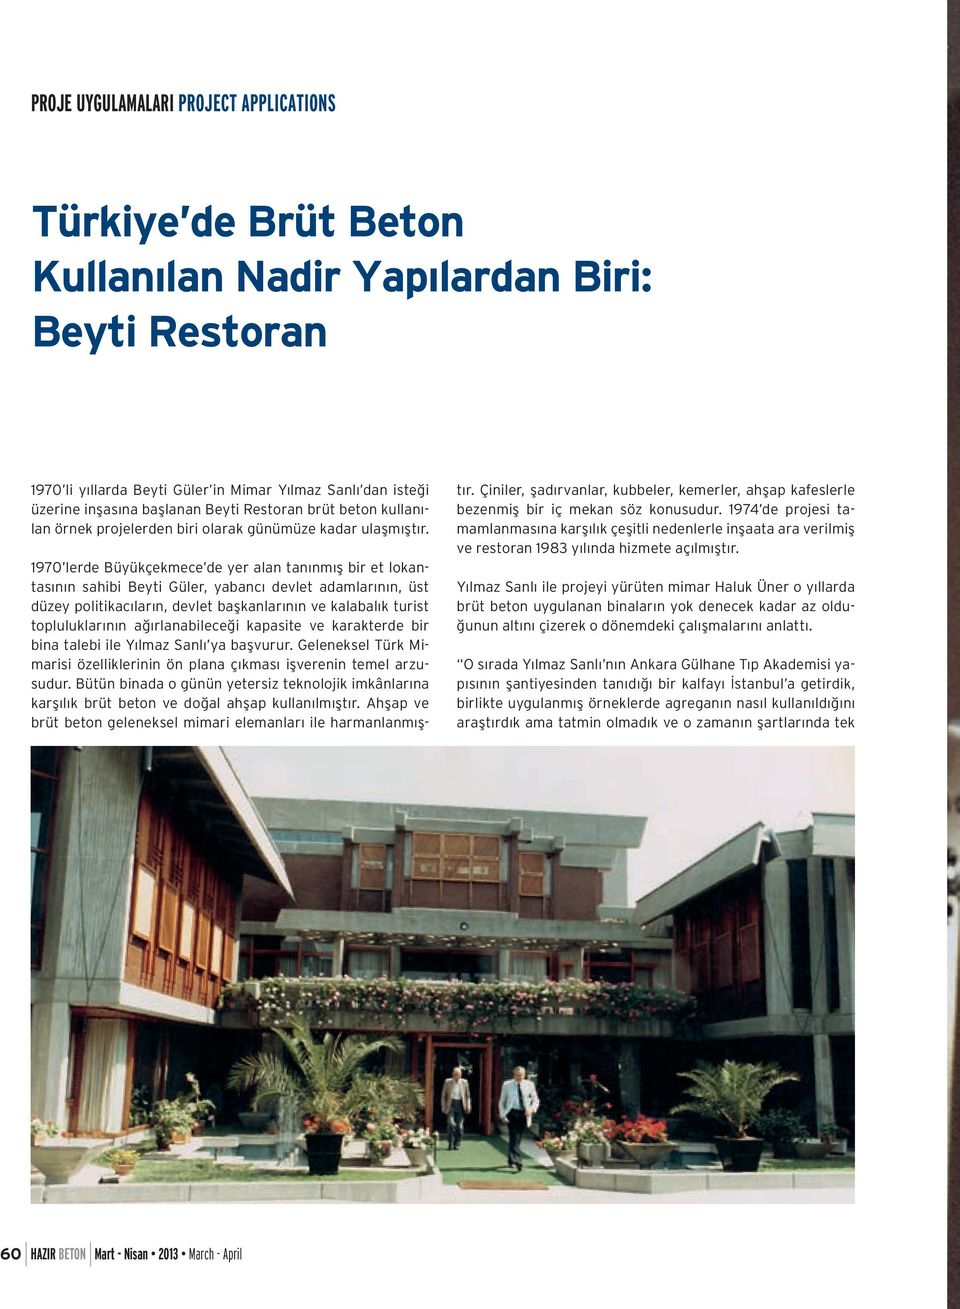 1970 lerde Büyükçekmece de yer alan tanınmış bir et lokantasının sahibi Beyti Güler, yabancı devlet adamlarının, üst düzey politikacıların, devlet başkanlarının ve kalabalık turist topluluklarının